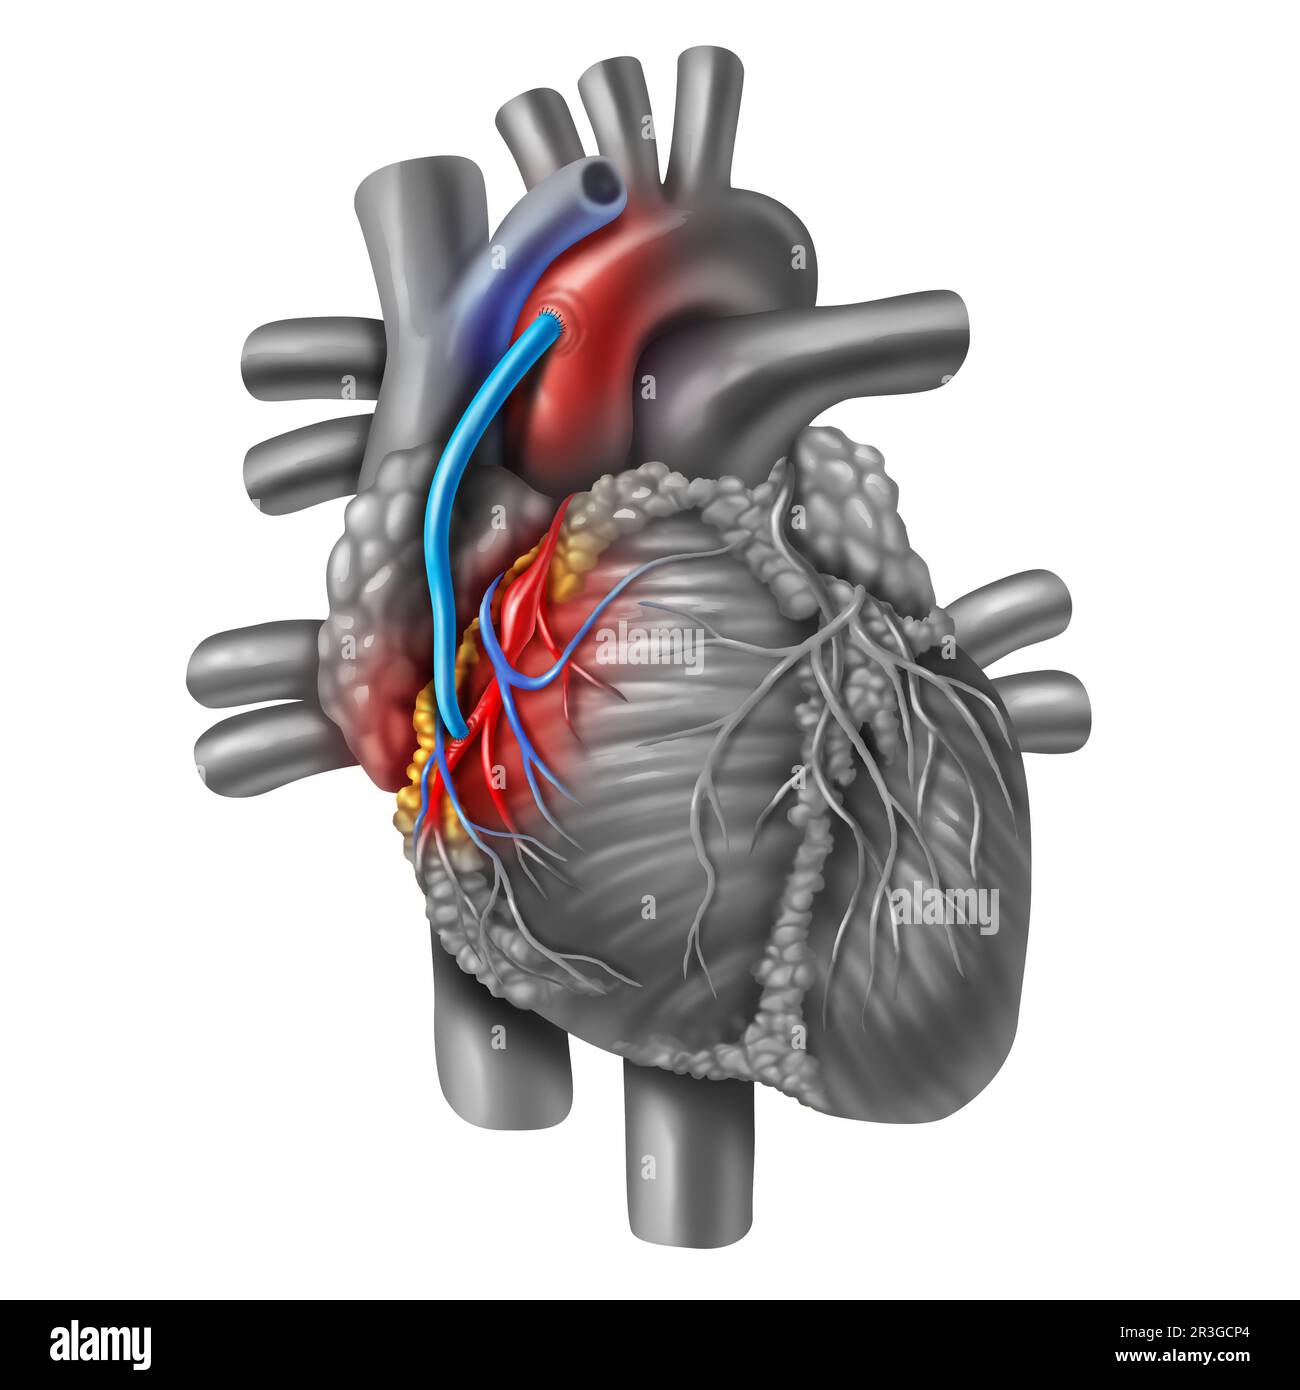 Innesto del bypass dell'arteria coronaria o CABG come ostruzione della placca nell'arteria coronaria o nelle arterie come vena da una gamba che è innestata a un cuore Foto Stock